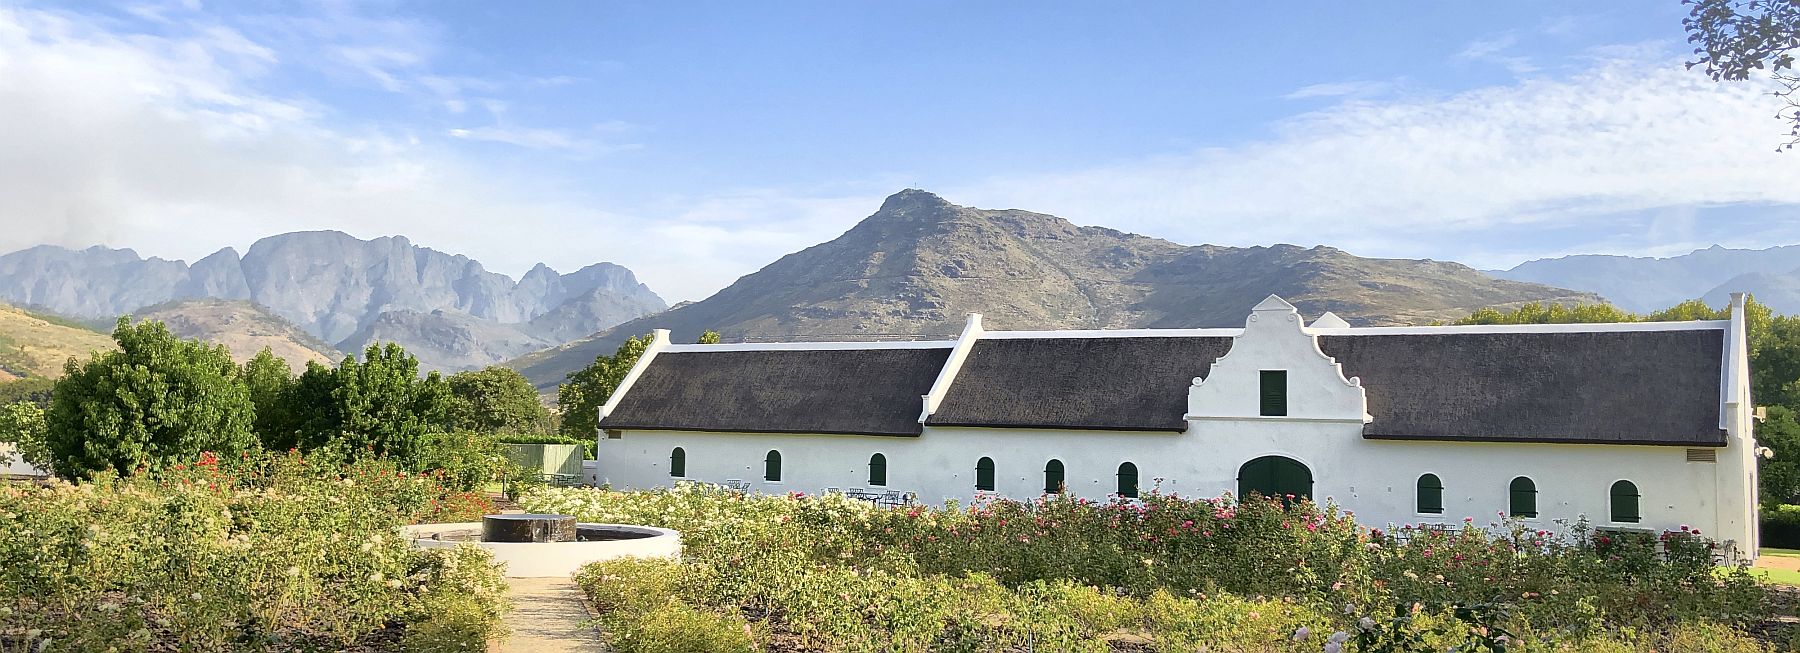 La Motte – Ein Besuch auf einem der schönsten Weingüter Südafrikas